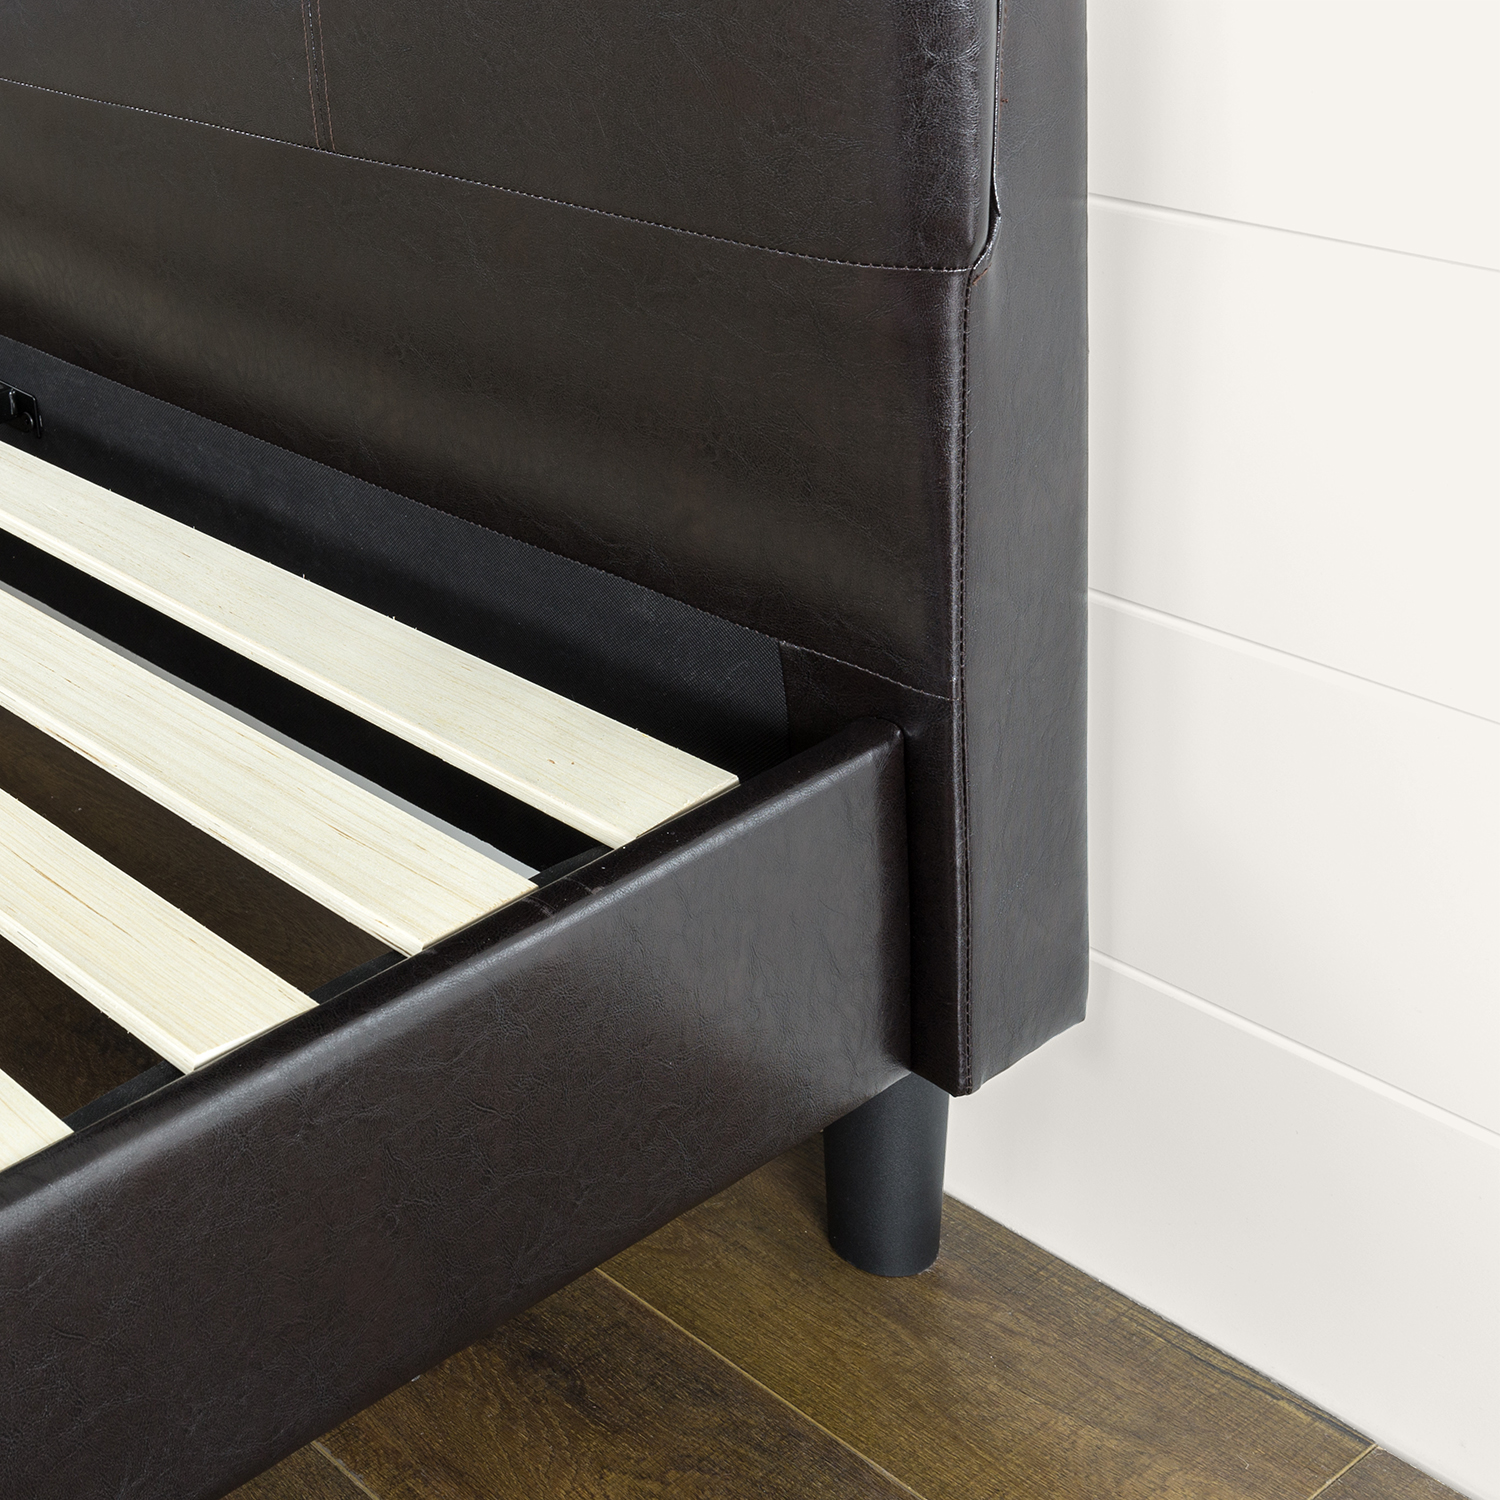 Zinus Kitch 43” Faux Leather Upholstered Platform Bed Frame, King - image 3 of 7